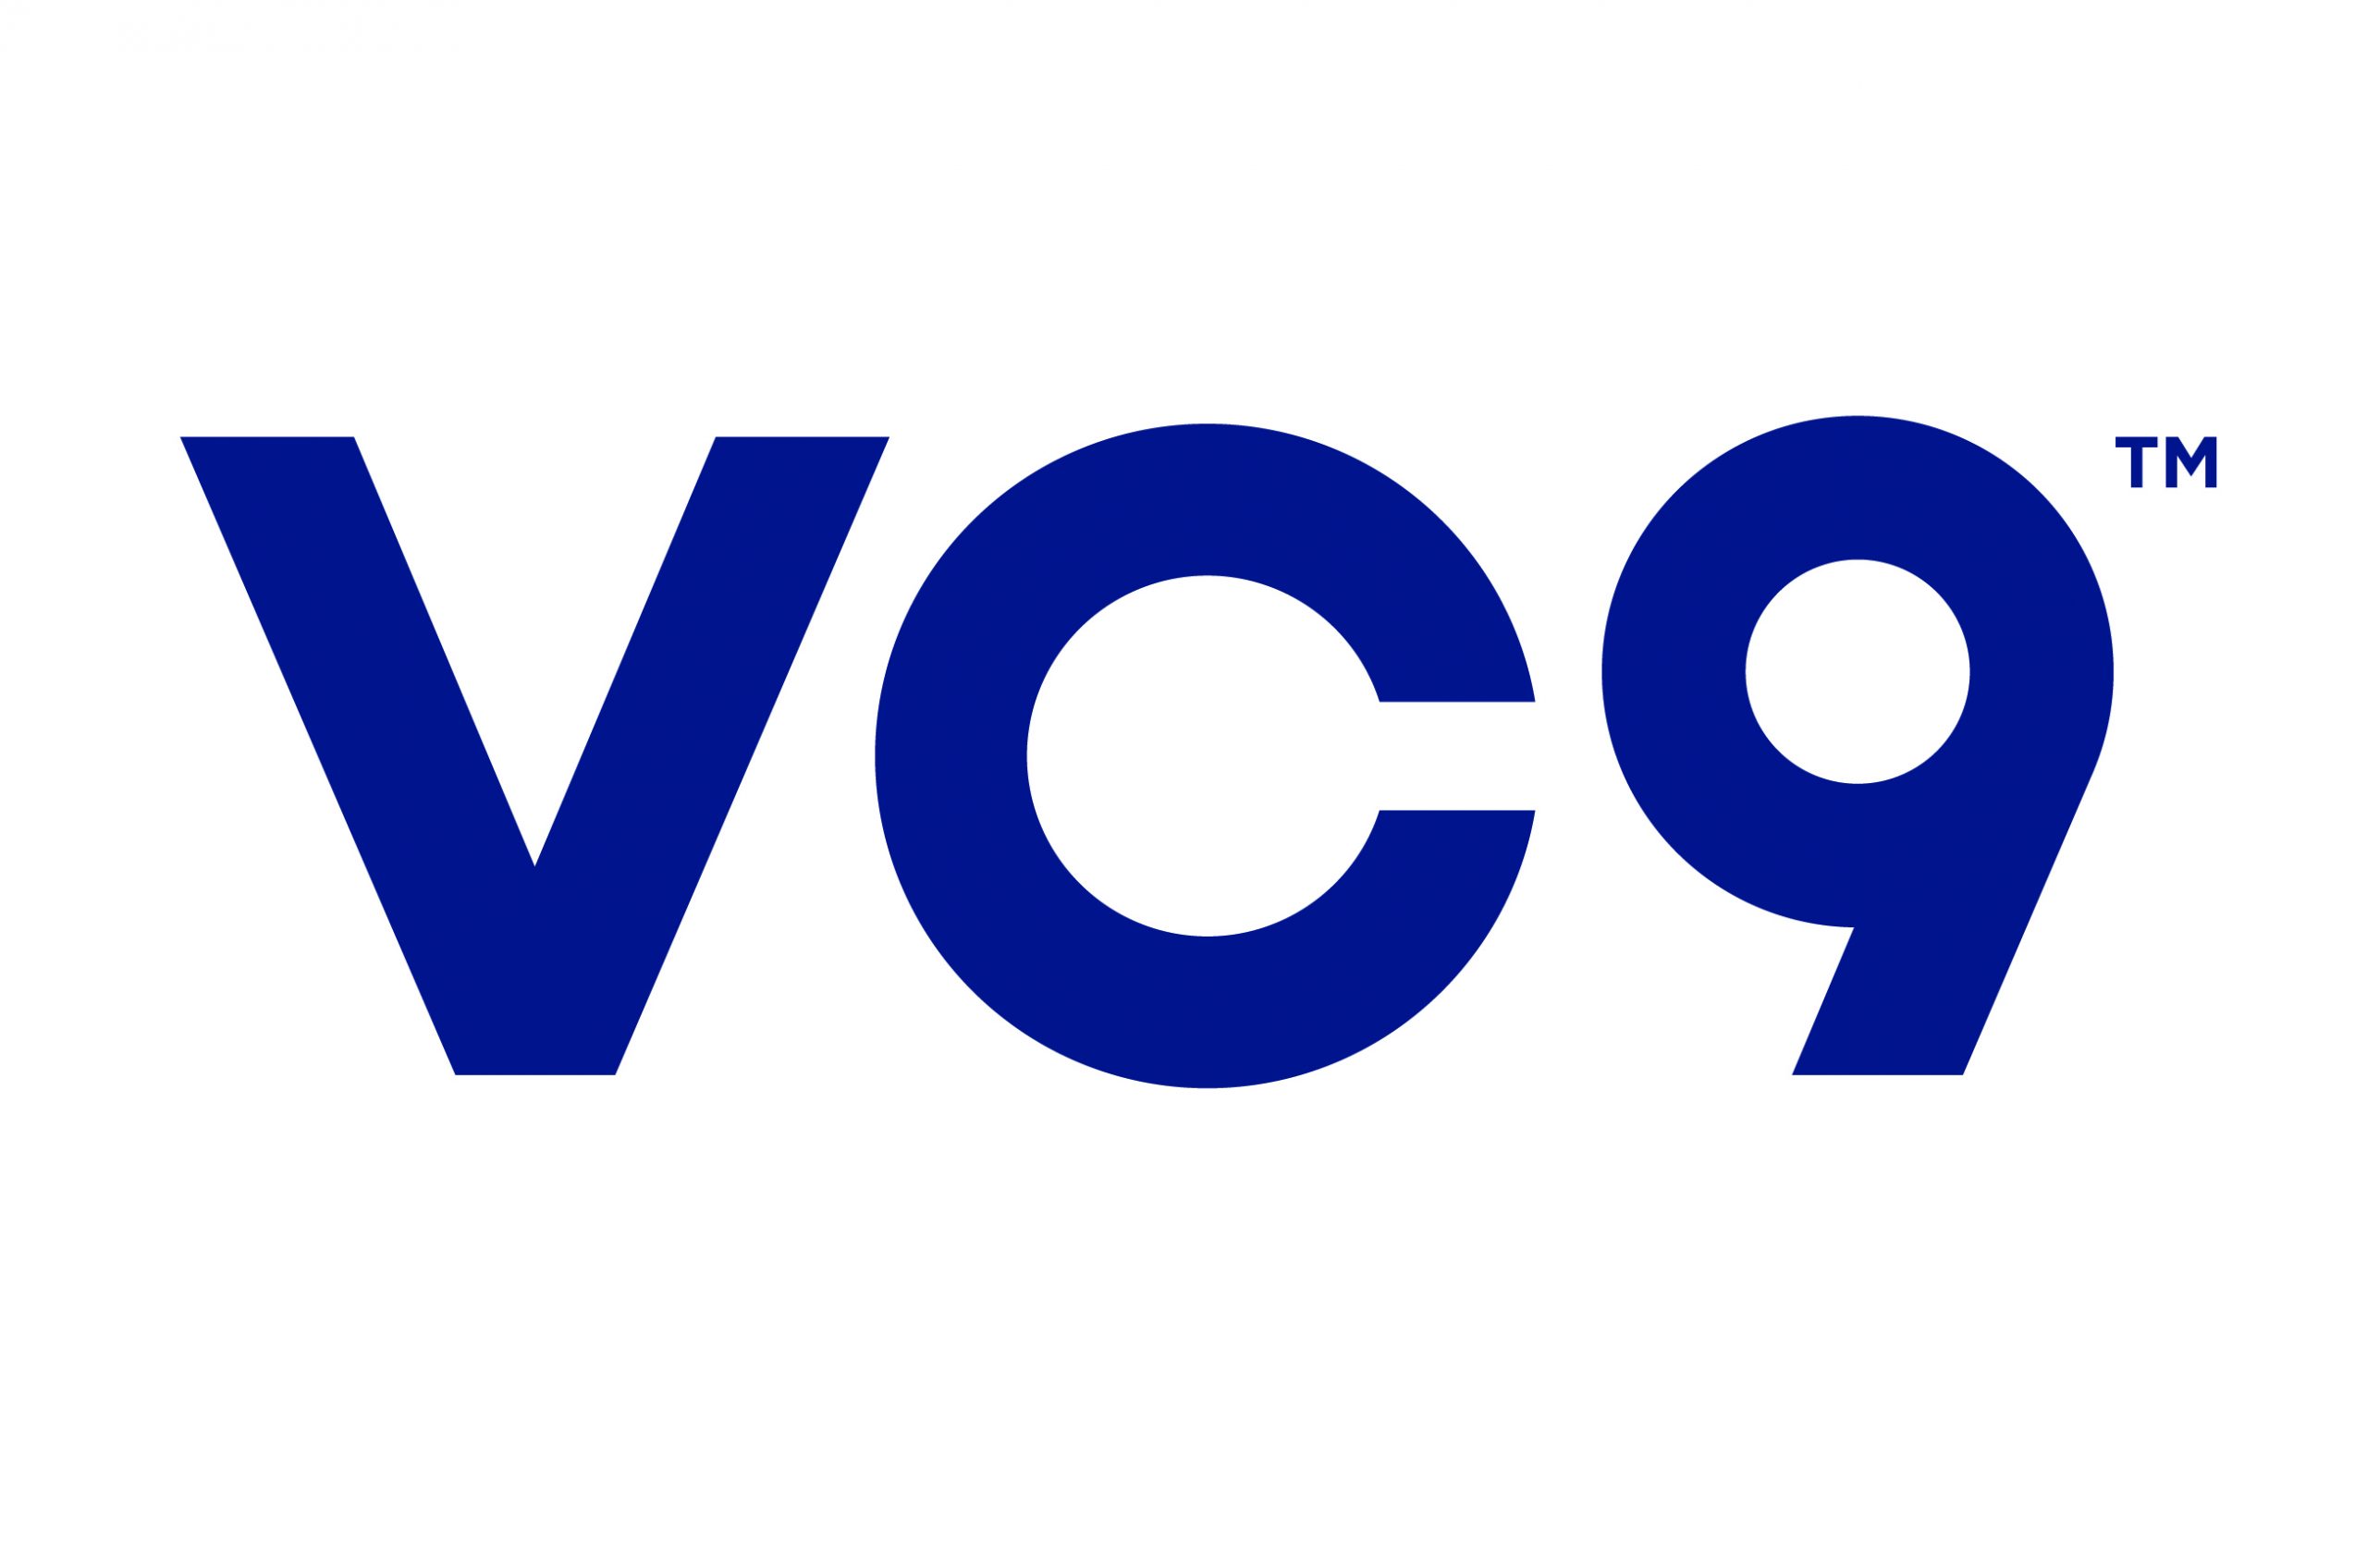 VC9